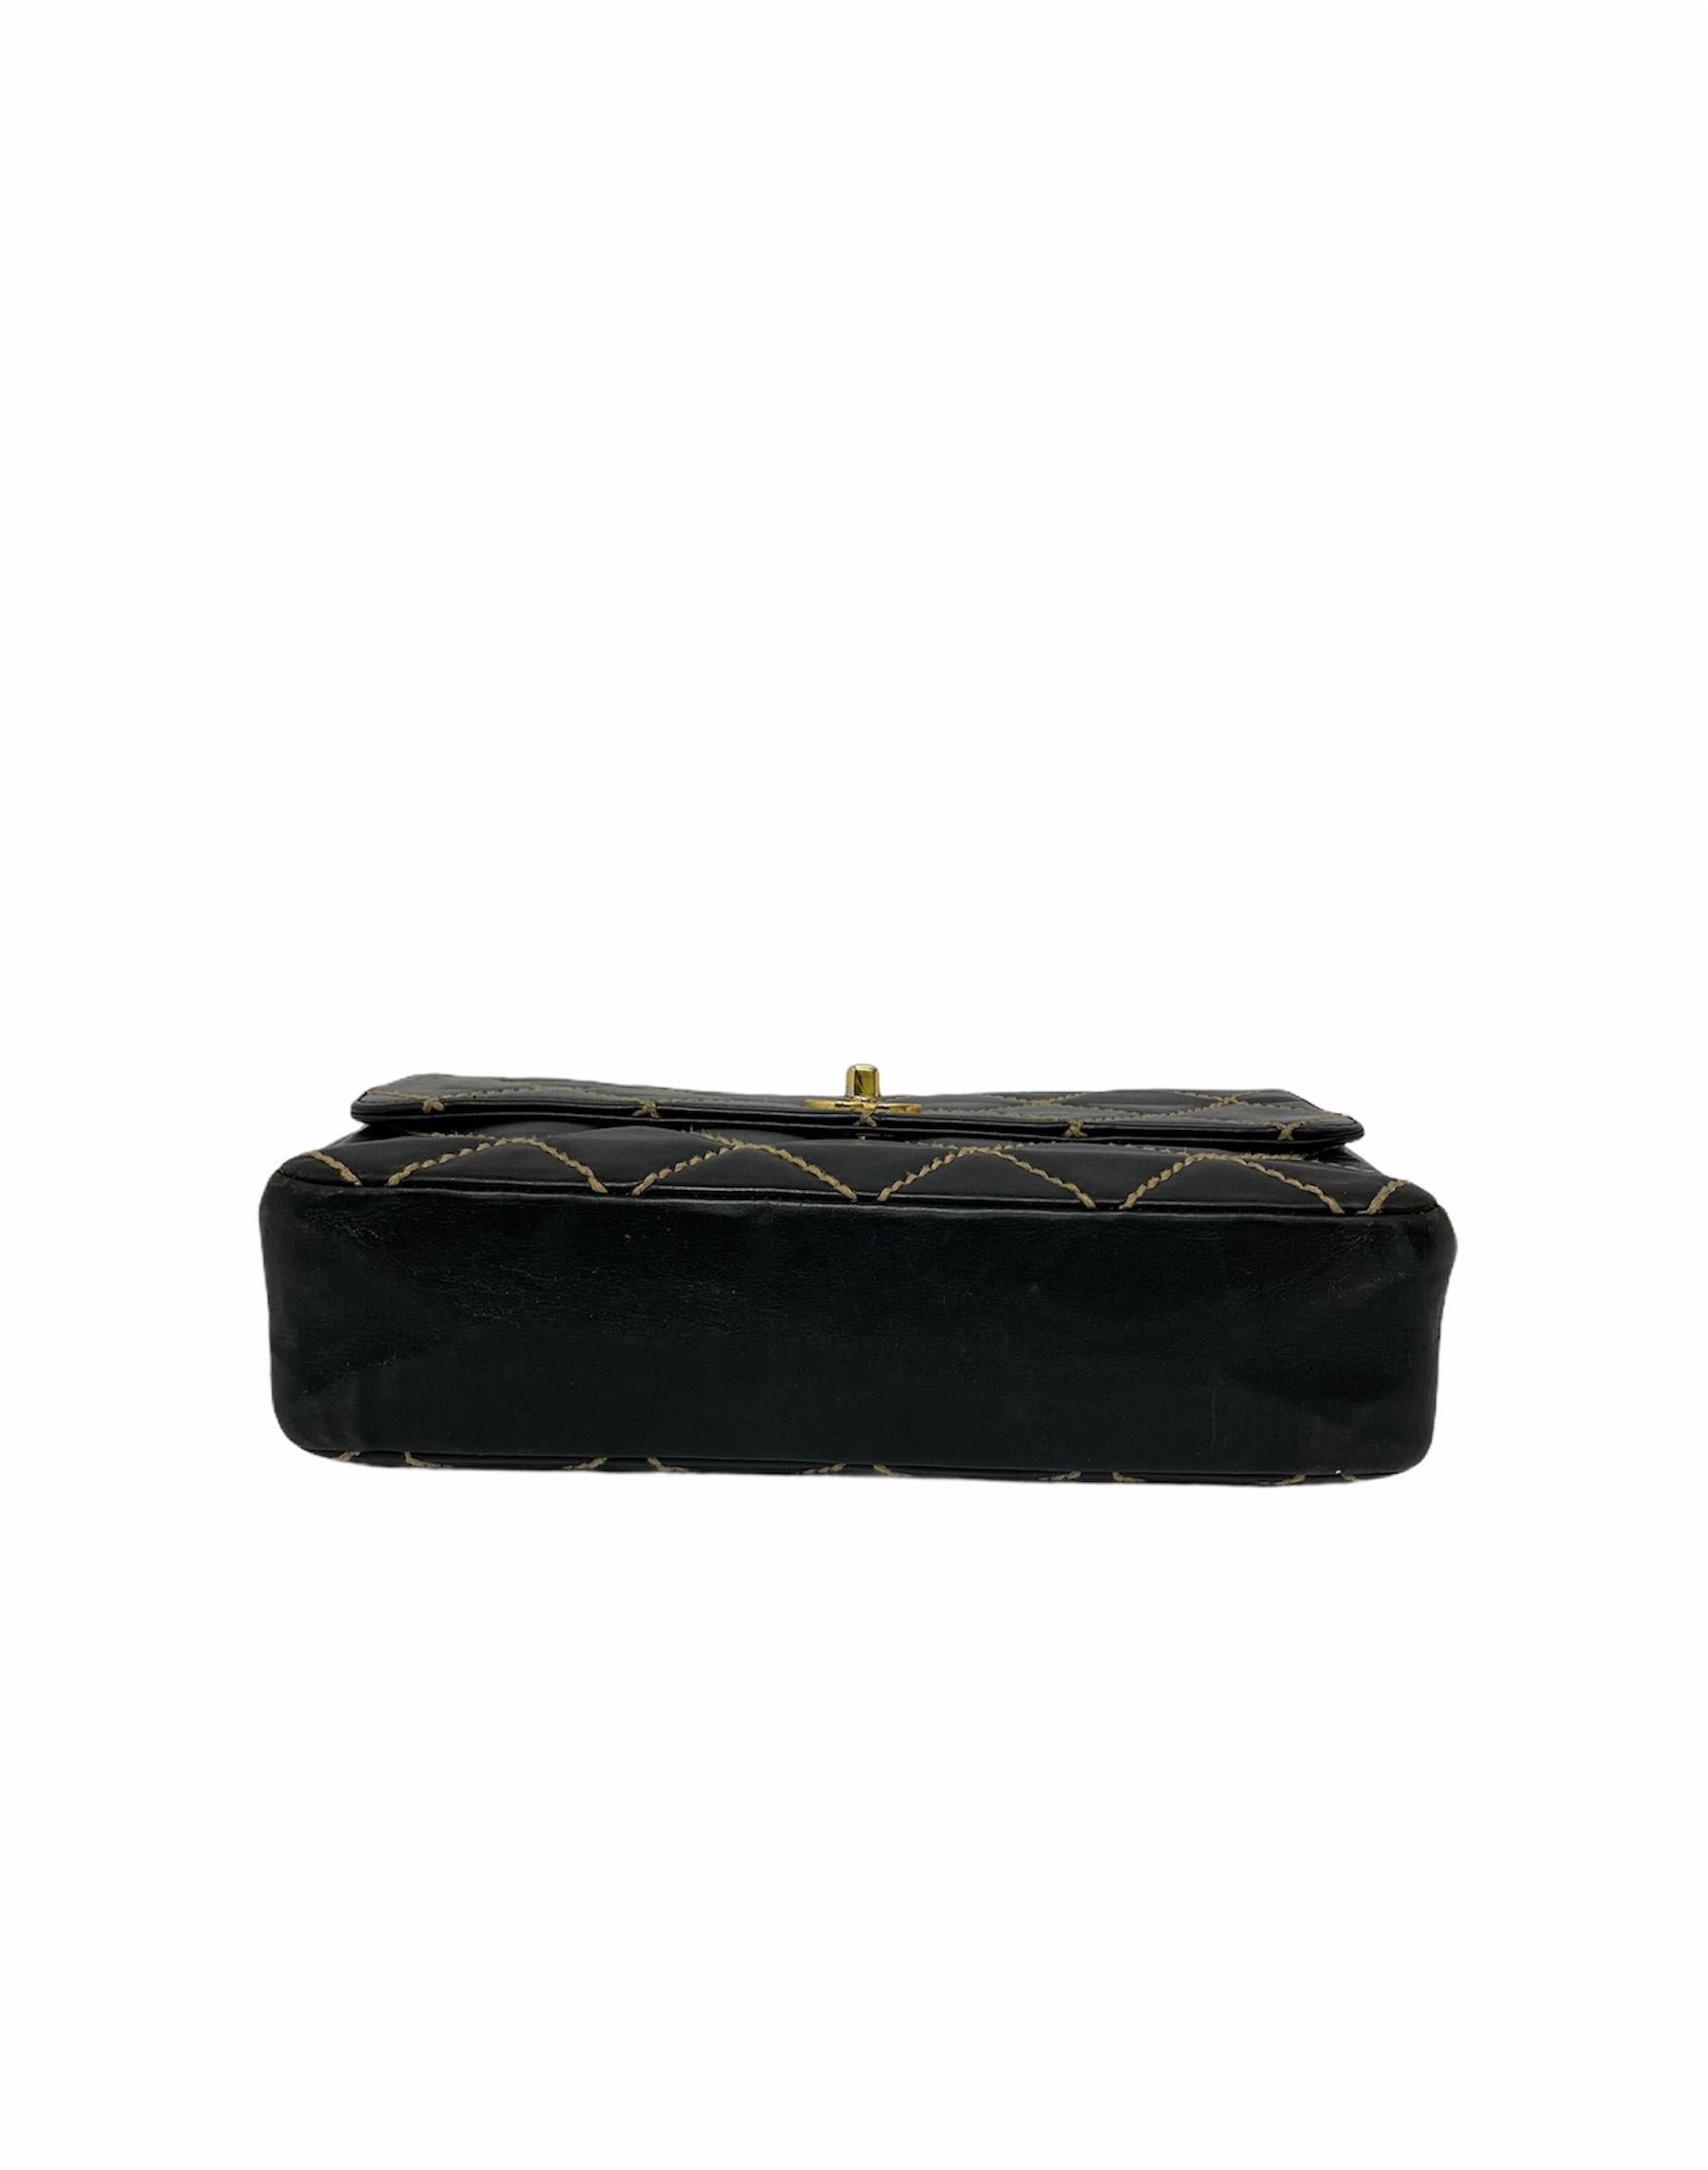 Chanel Black Leather Bag 2